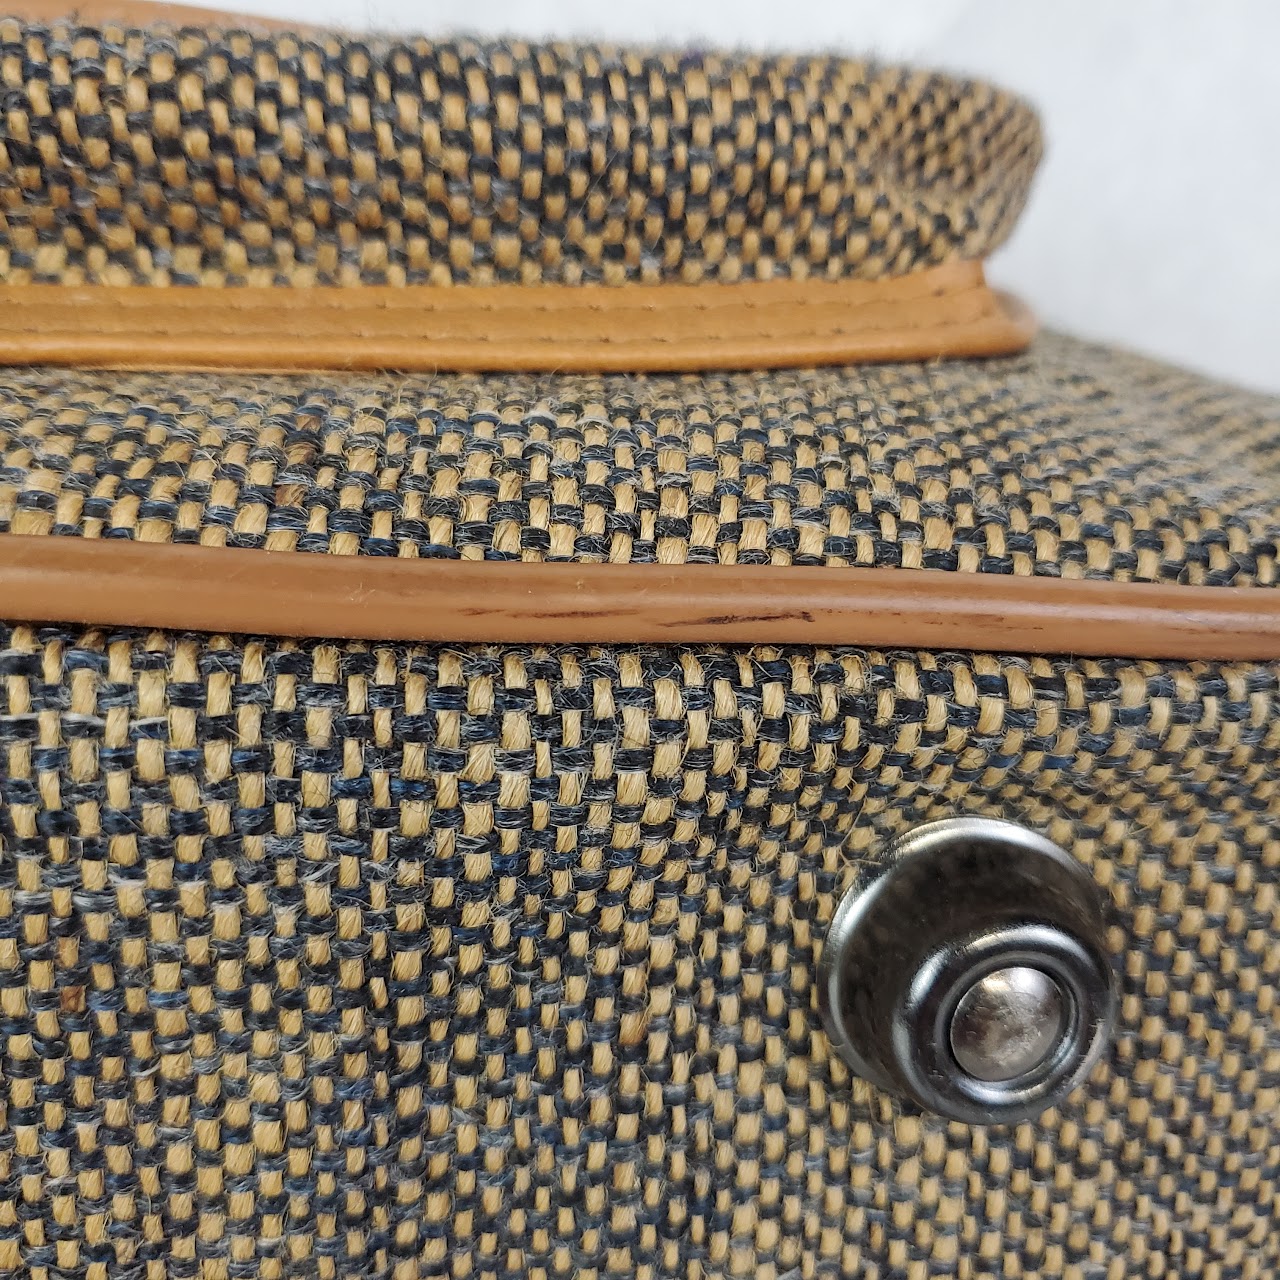 Pierre Cardin Vintage Weekender Bag